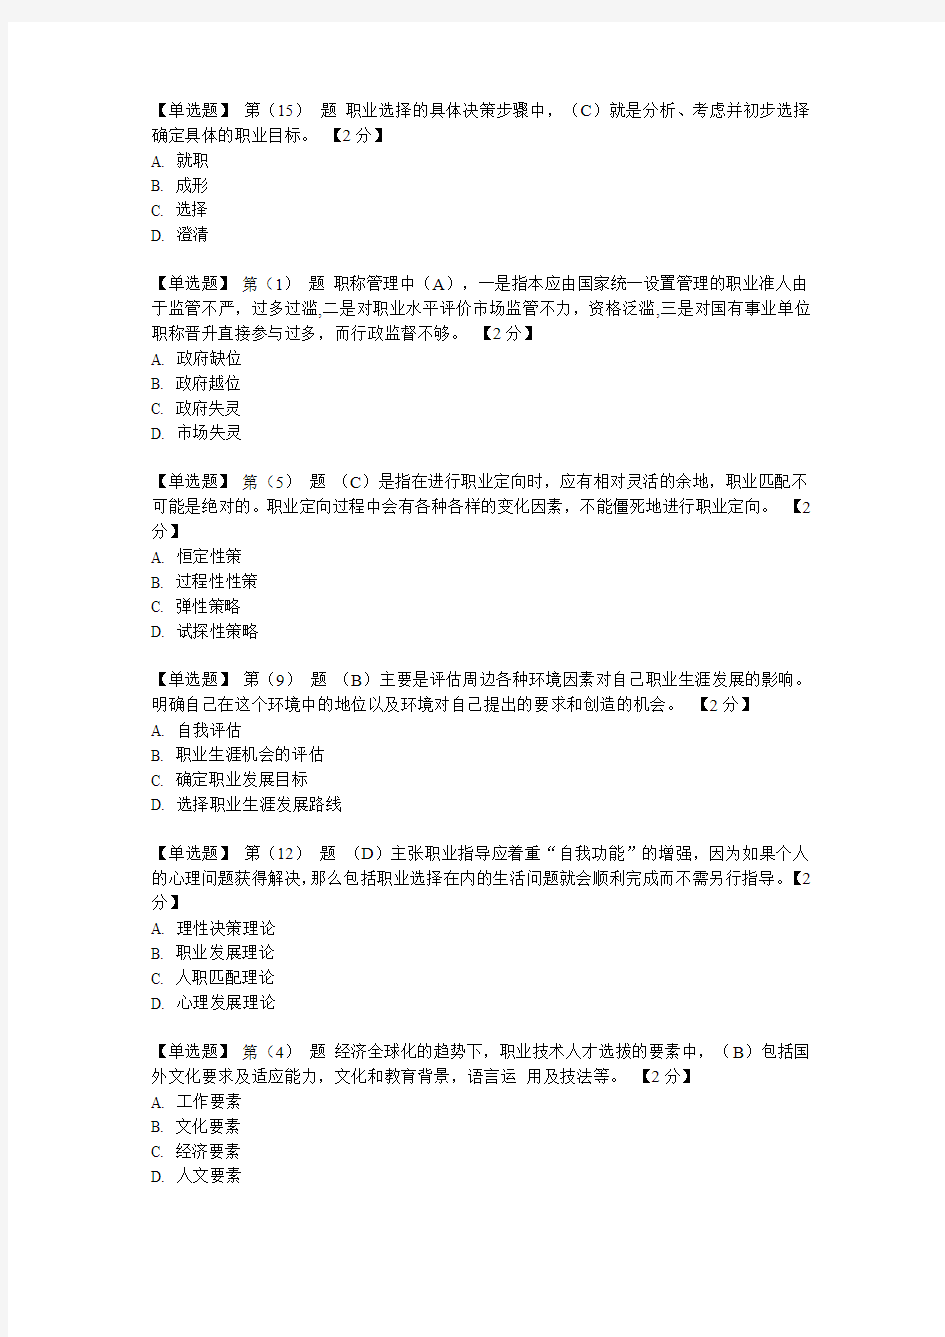 徐州市专业技术人员职业发展与规划在线考试题库(最全)